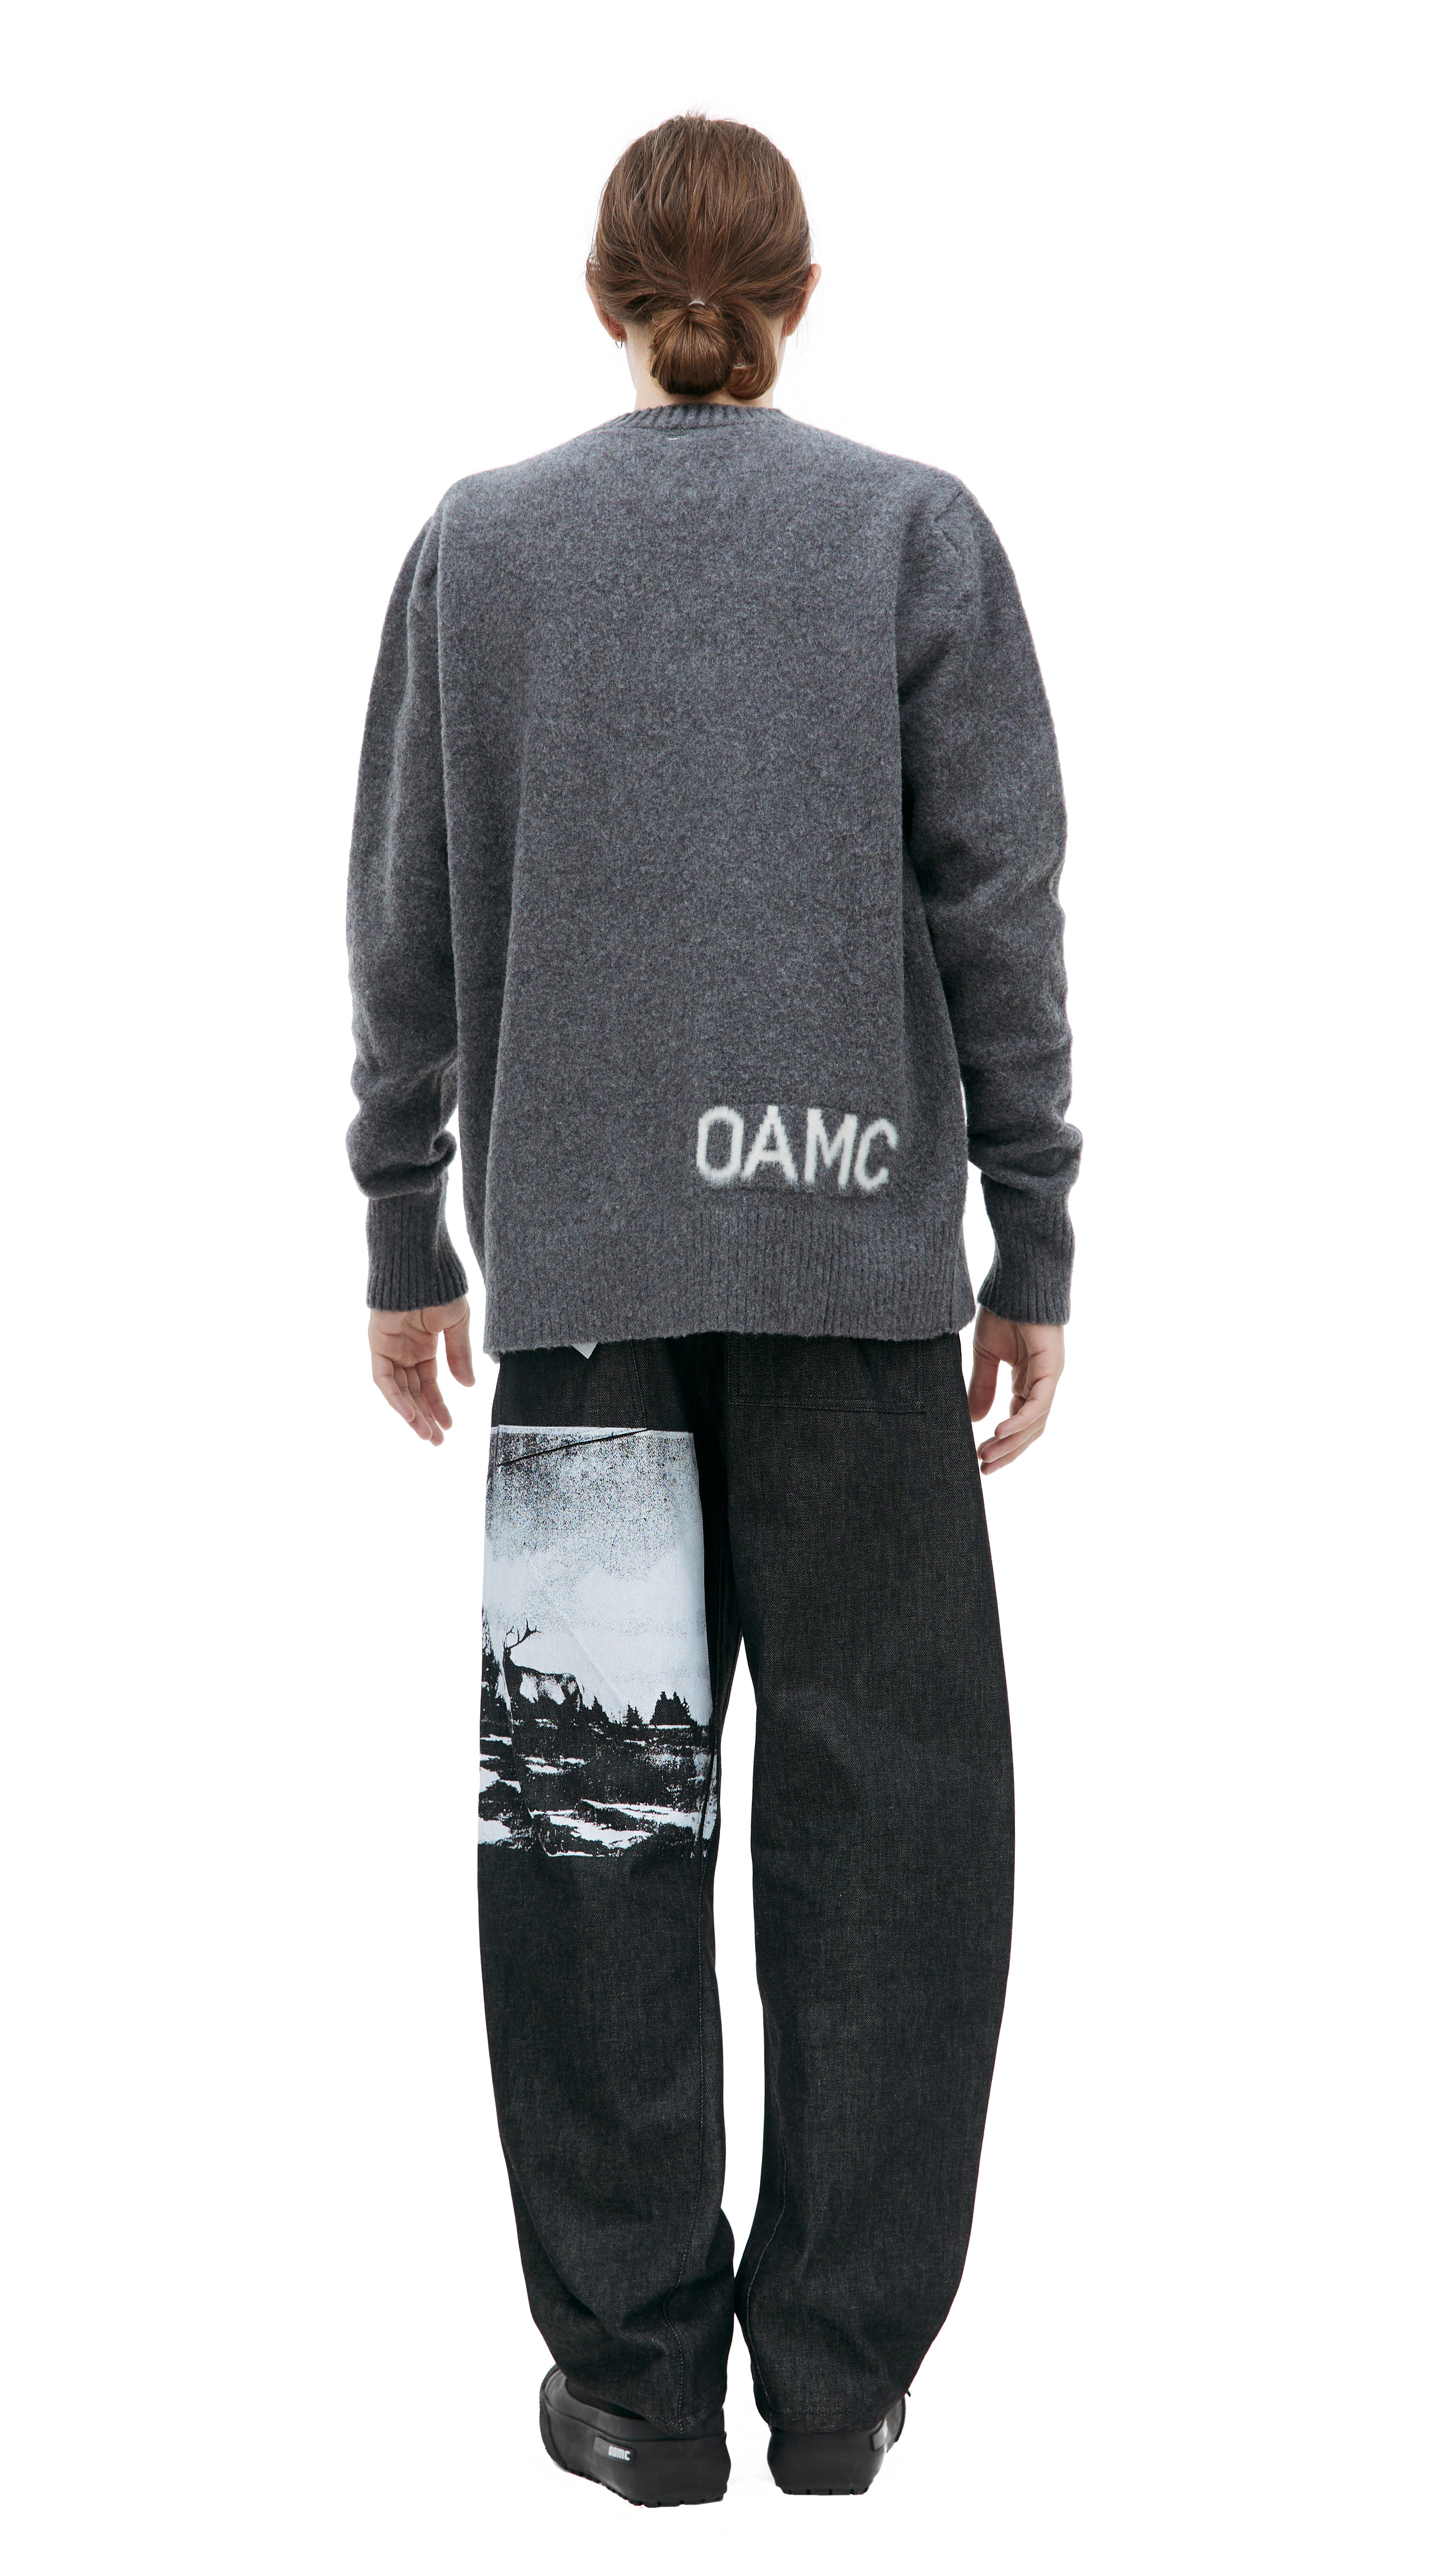 Buy OAMC men grey whistler wool sweater for $770 online on SV77 ...